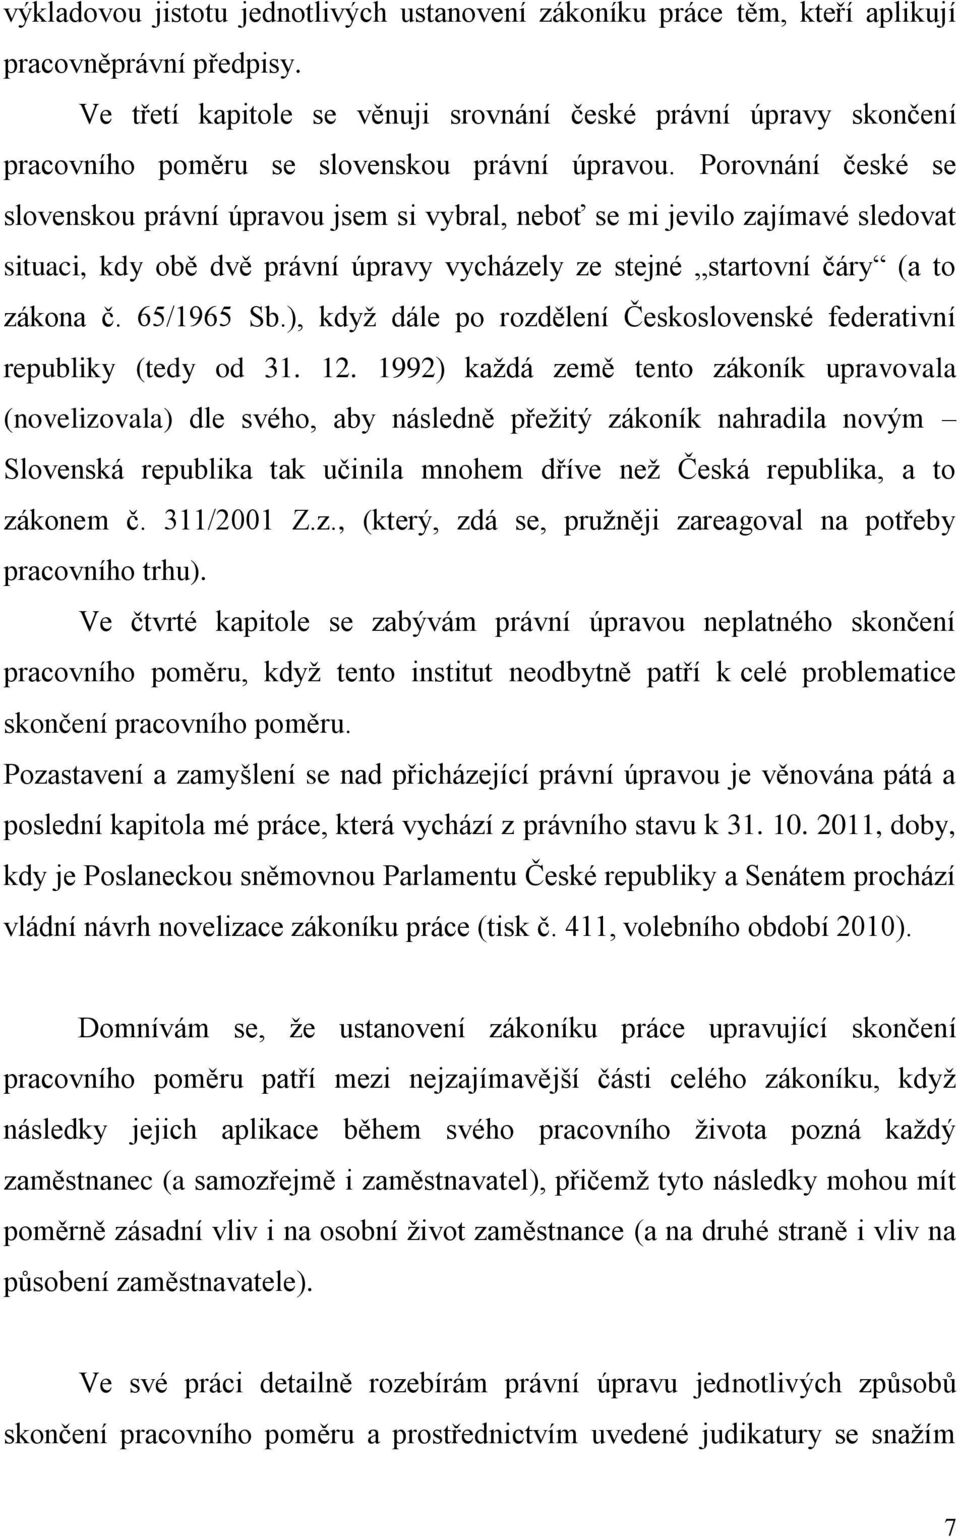 Porovnání české se slovenskou právní úpravou jsem si vybral, neboť se mi jevilo zajímavé sledovat situaci, kdy obě dvě právní úpravy vycházely ze stejné startovní čáry (a to zákona č. 65/1965 Sb.